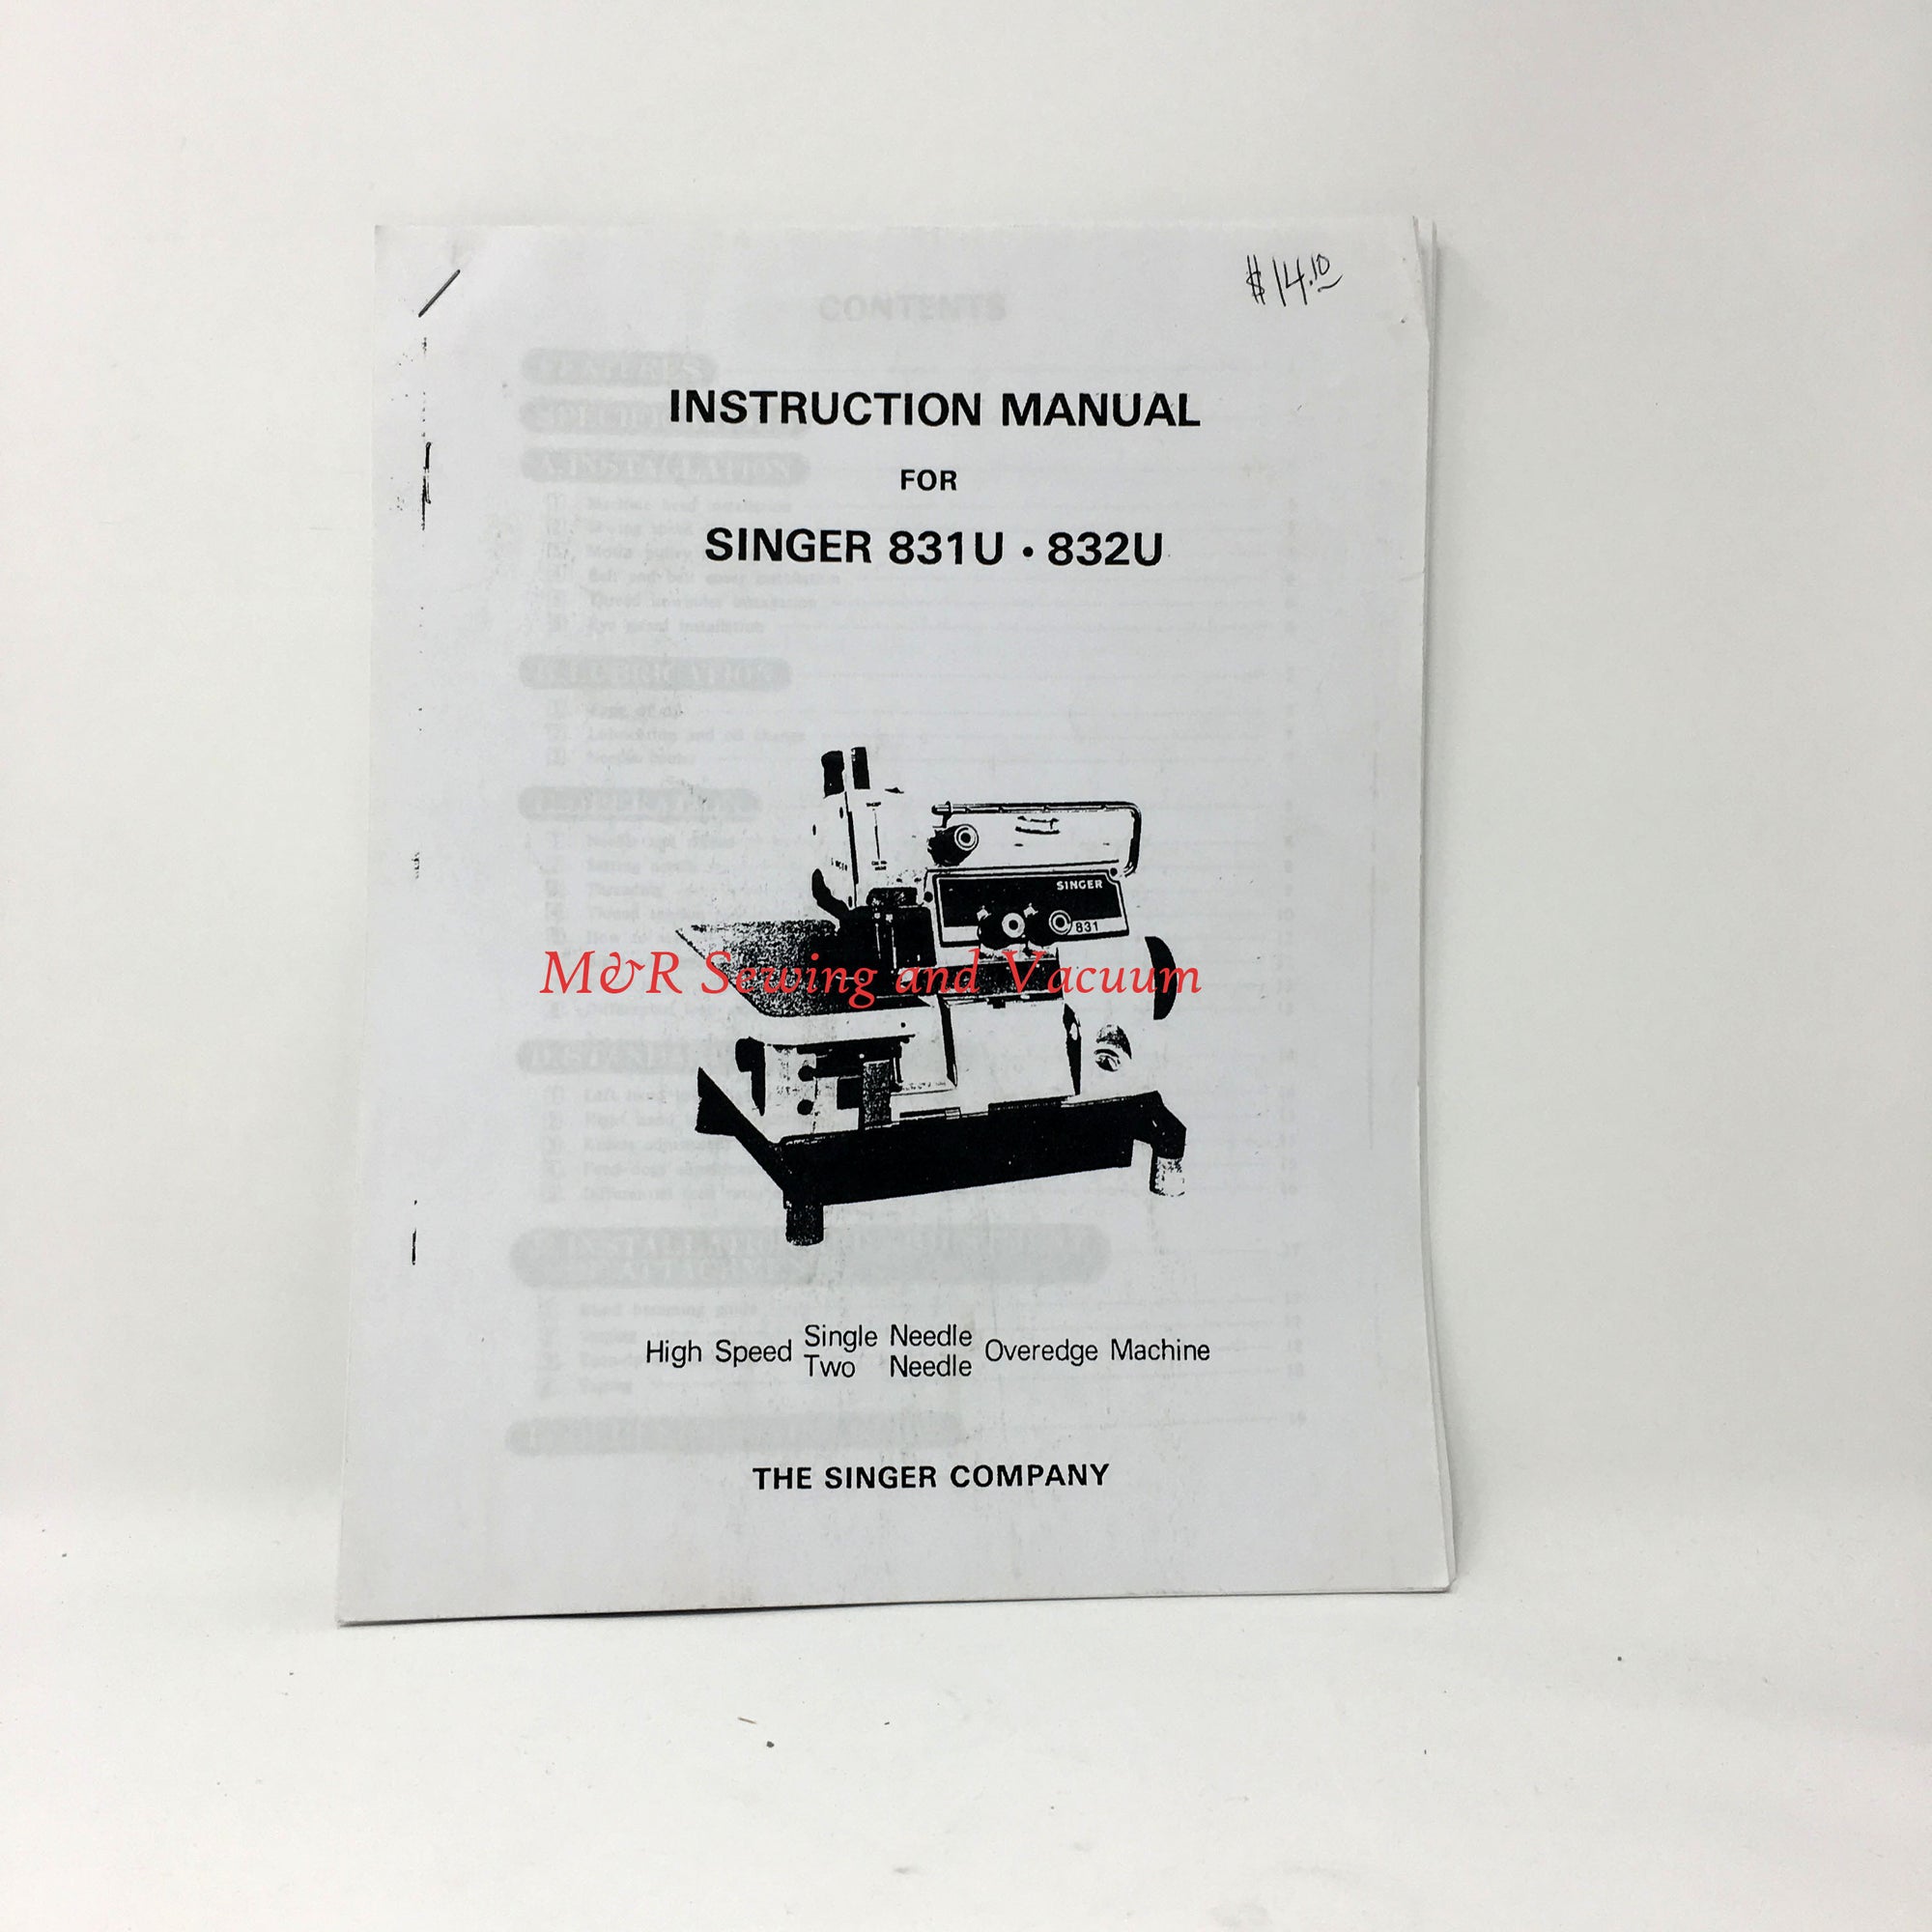 Singer 831U & 832U Manual